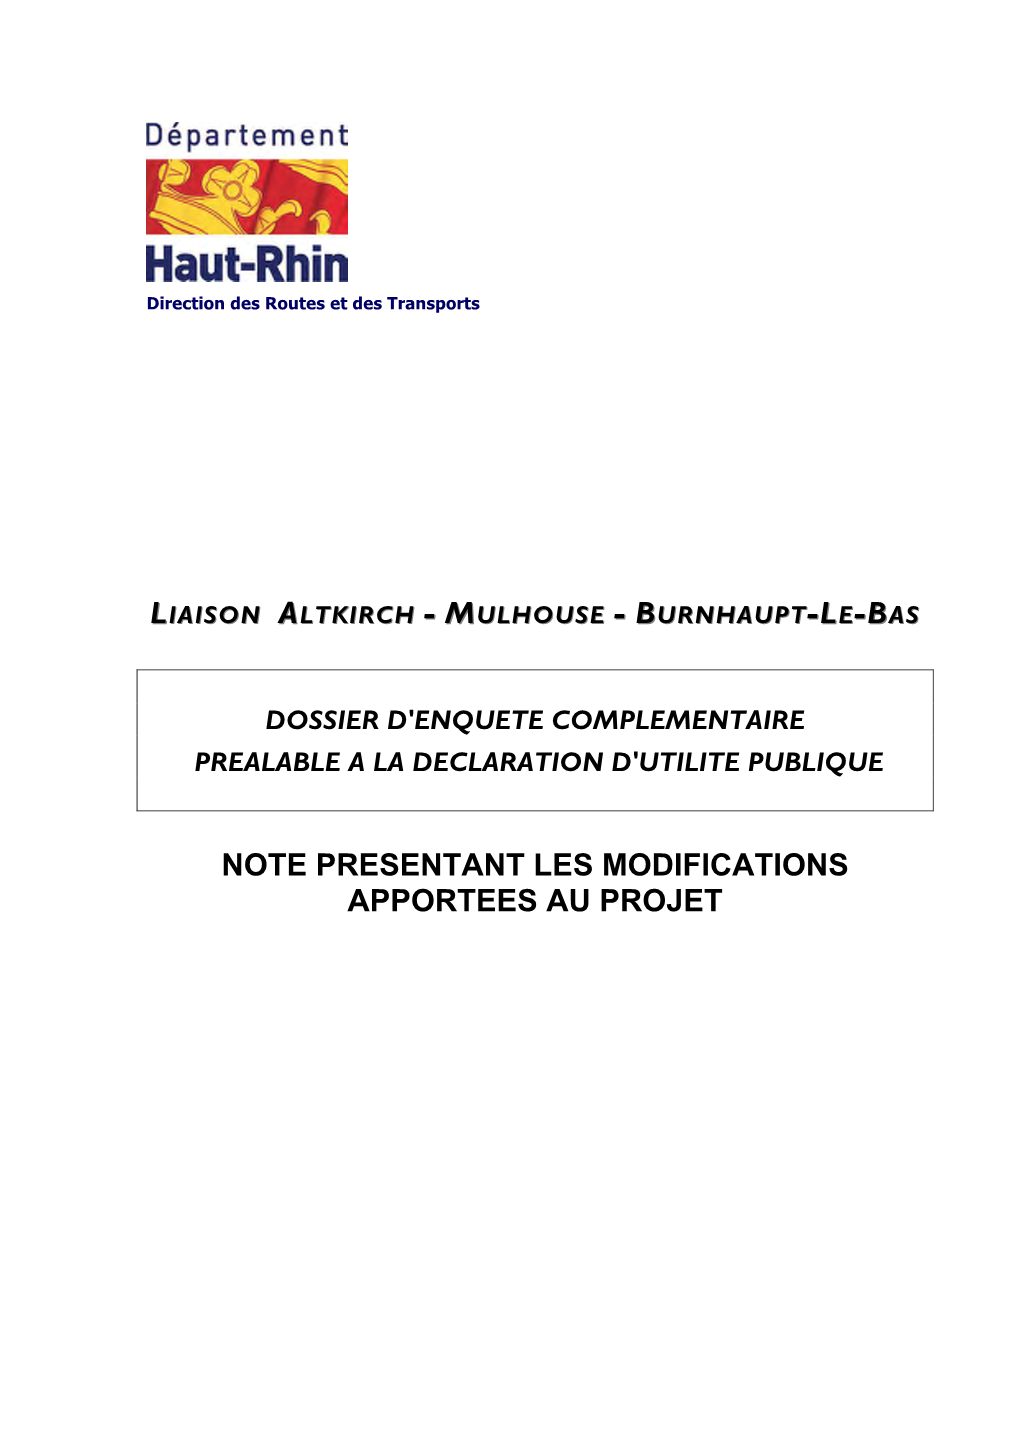 Note Presentant Les Modifications Apportees Au Projet